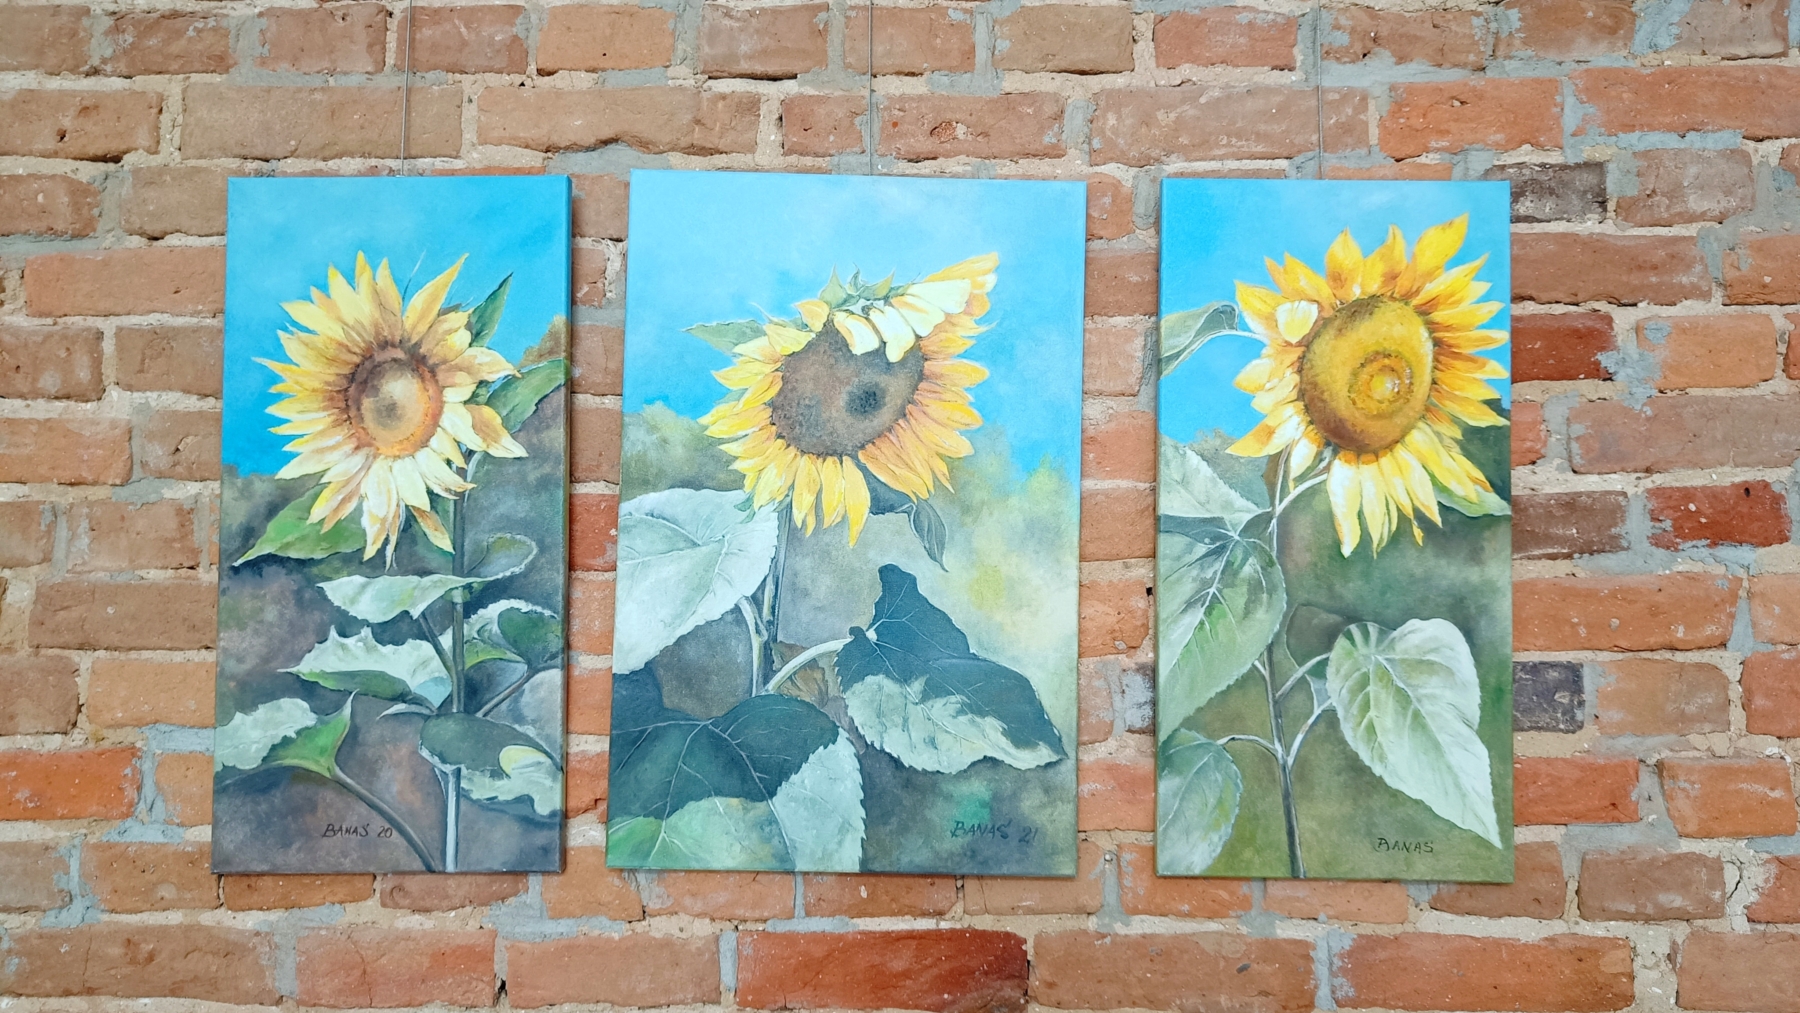 Obrazy przedstawiające słoneczniki wiszące na ceglanej ścianie